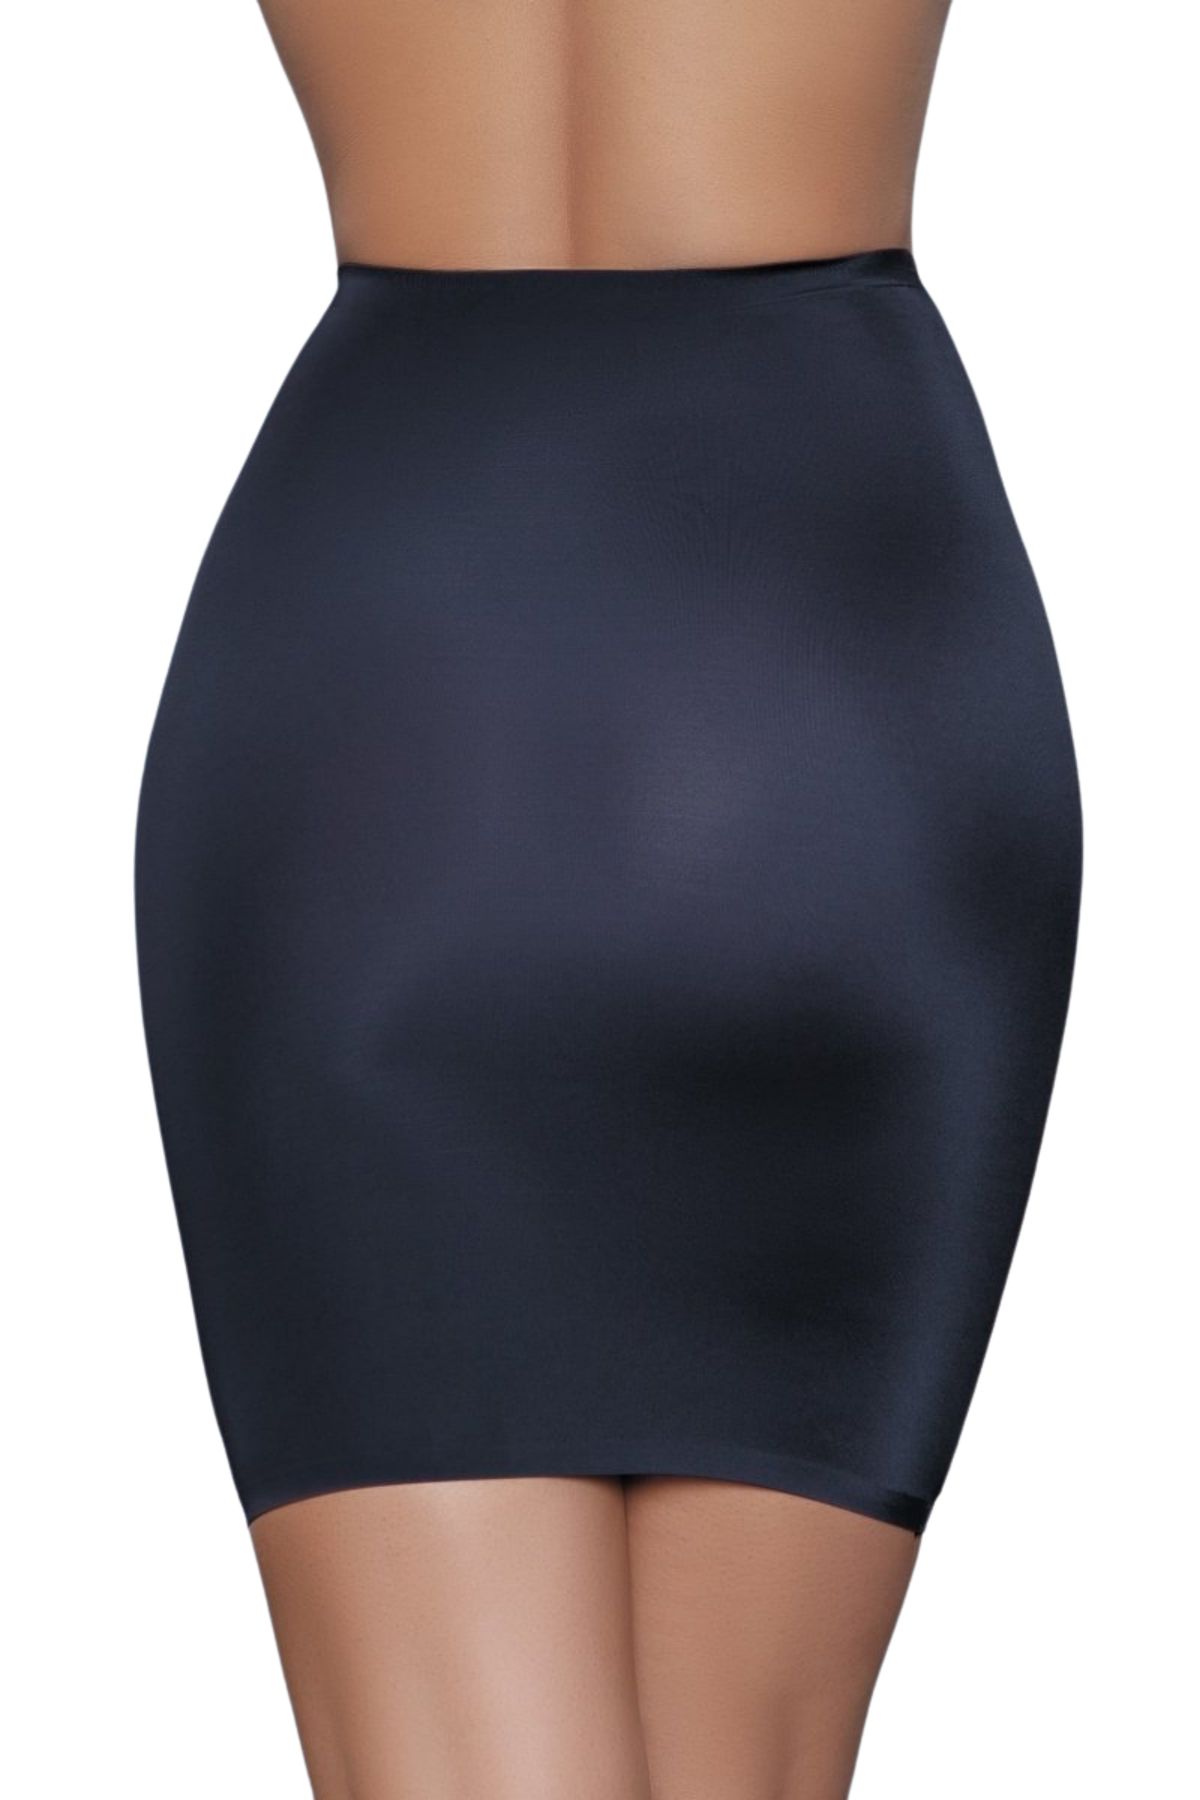 Shapewear Slip Skirt  For Love of Lingerie